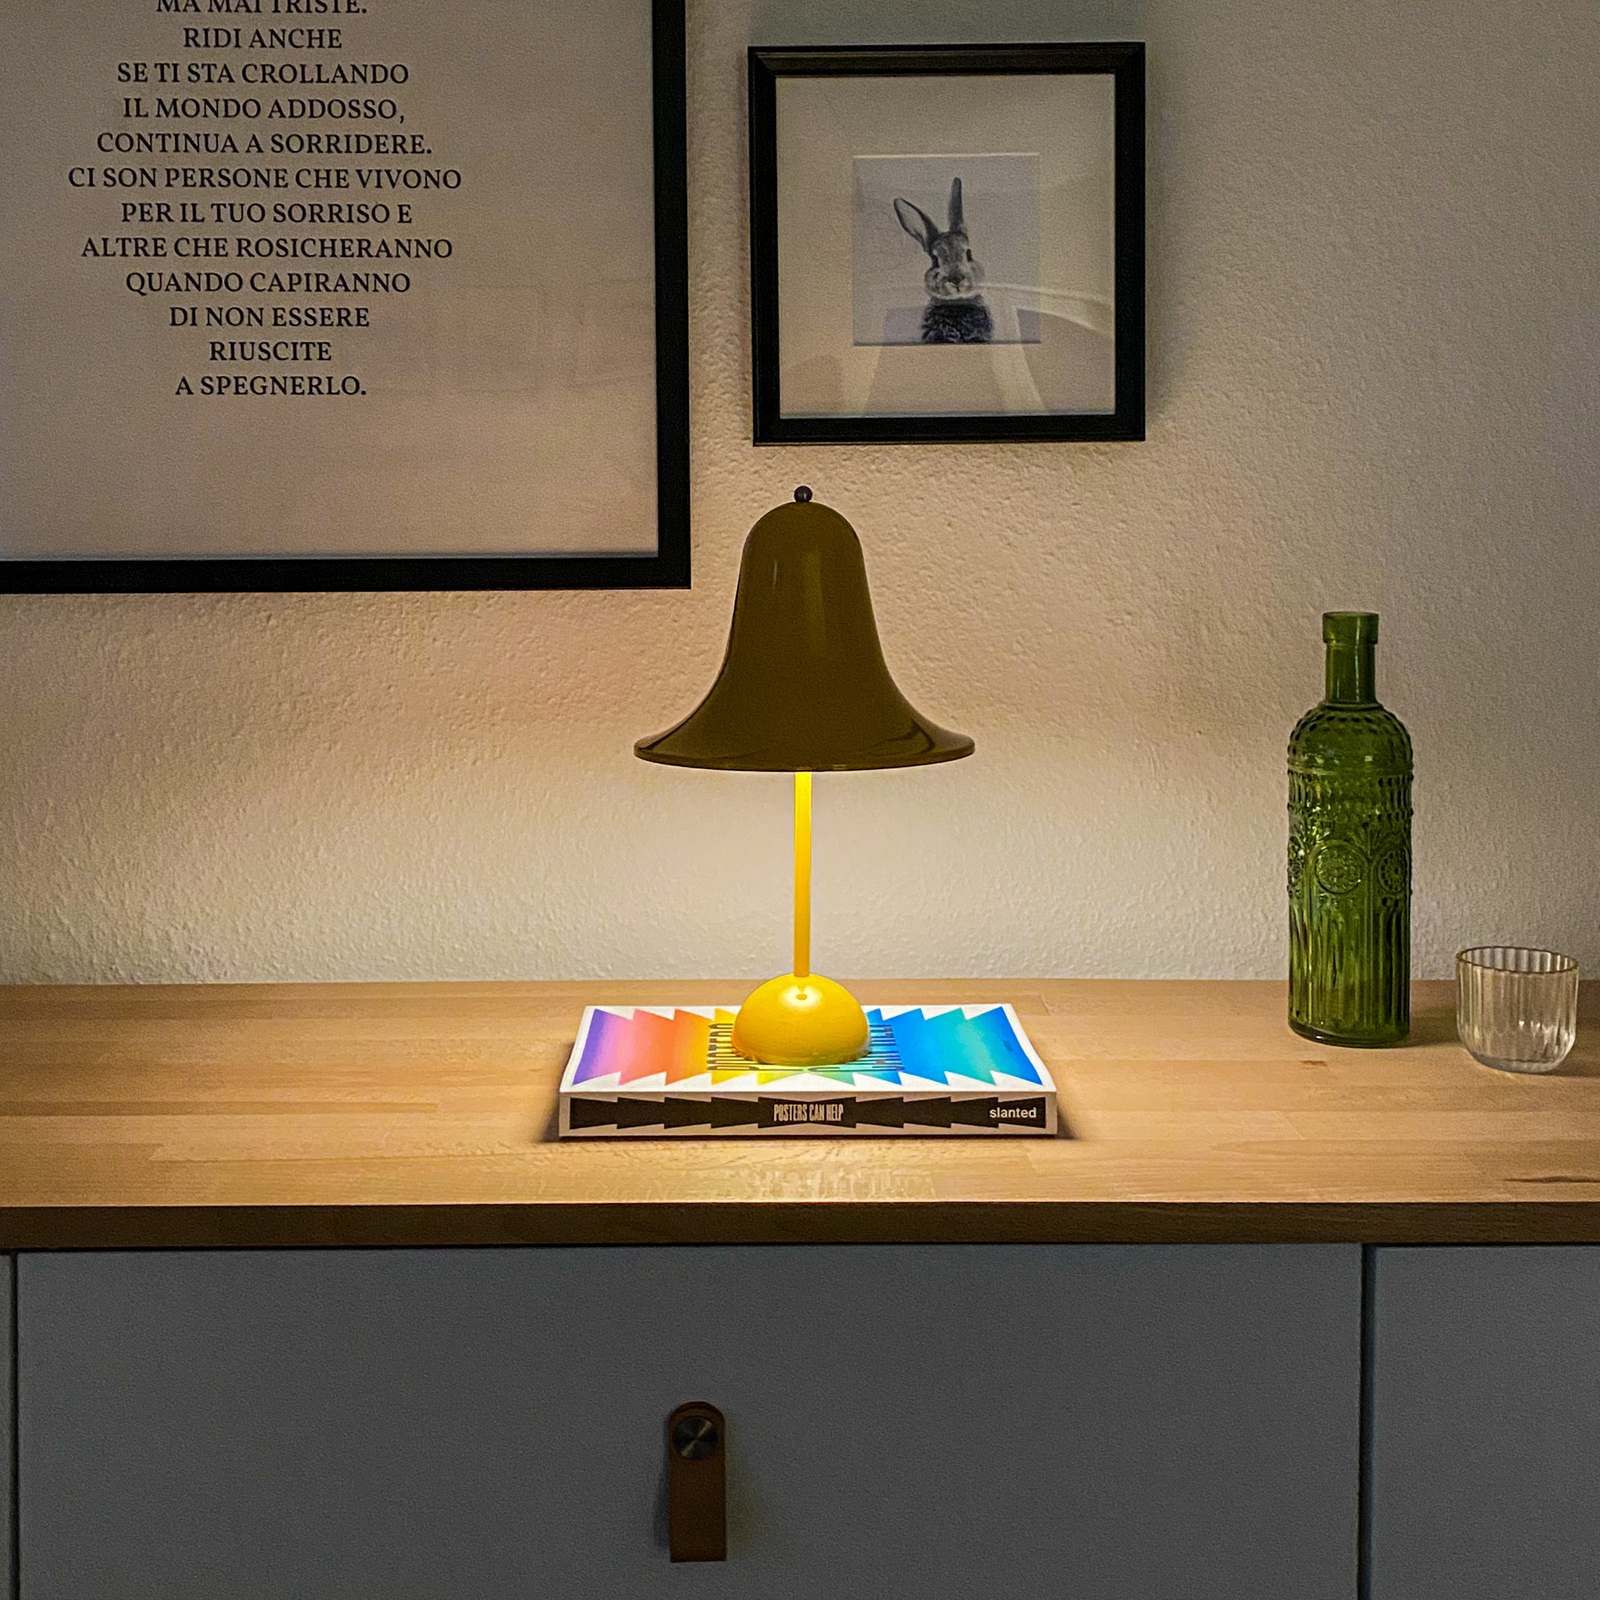 VERPAN Pantop stolní lampa žlutá